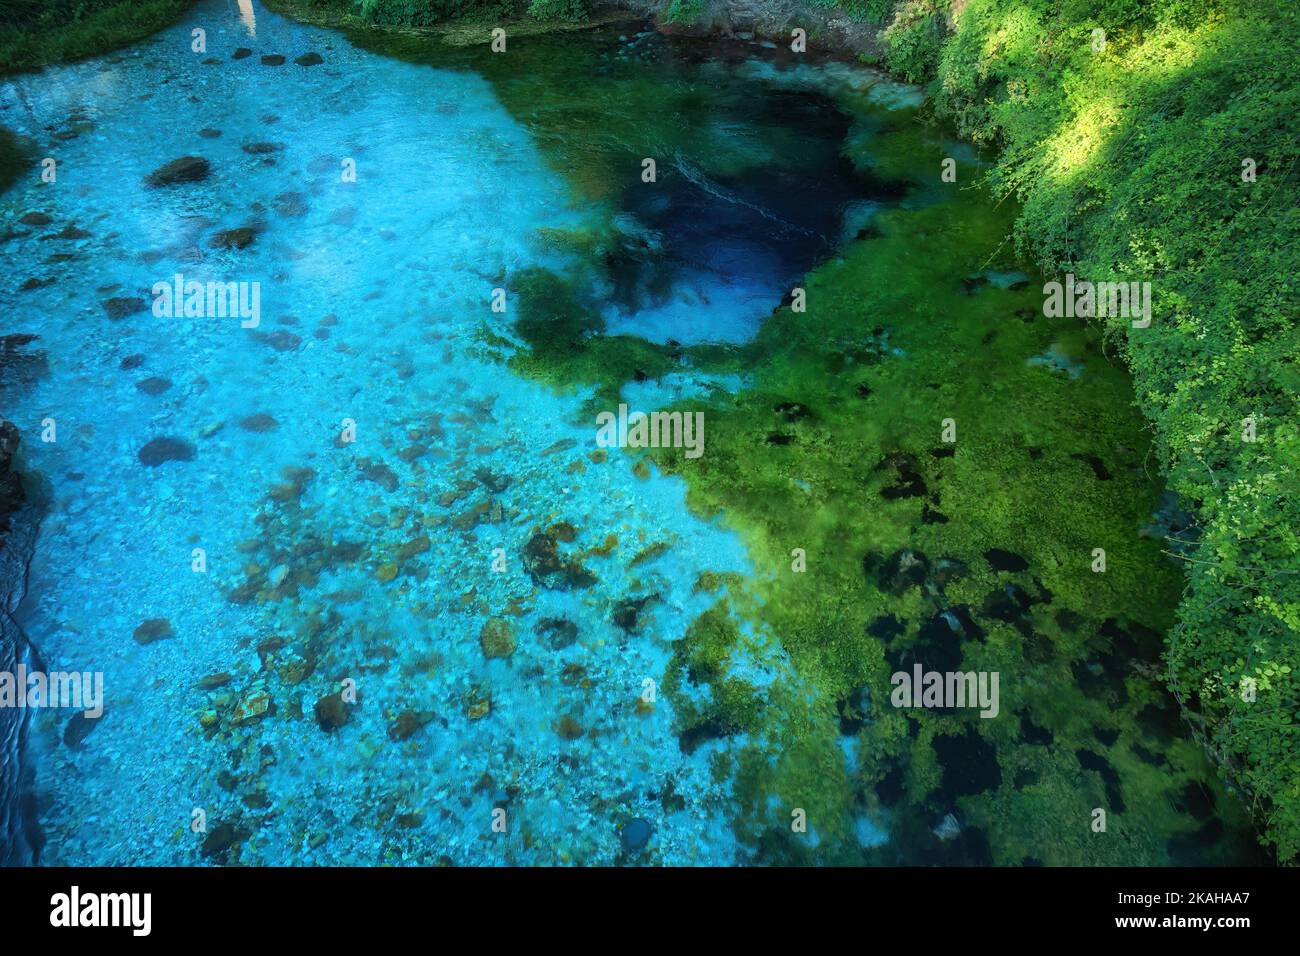 Blue Eye, source profonde de grotte karstique de la rivière Bistricë, Albanie. Clair, bleu-vert, eau fraîche, vue pittoresque de la vraie nature pure, aérienne, perpendi Banque D'Images